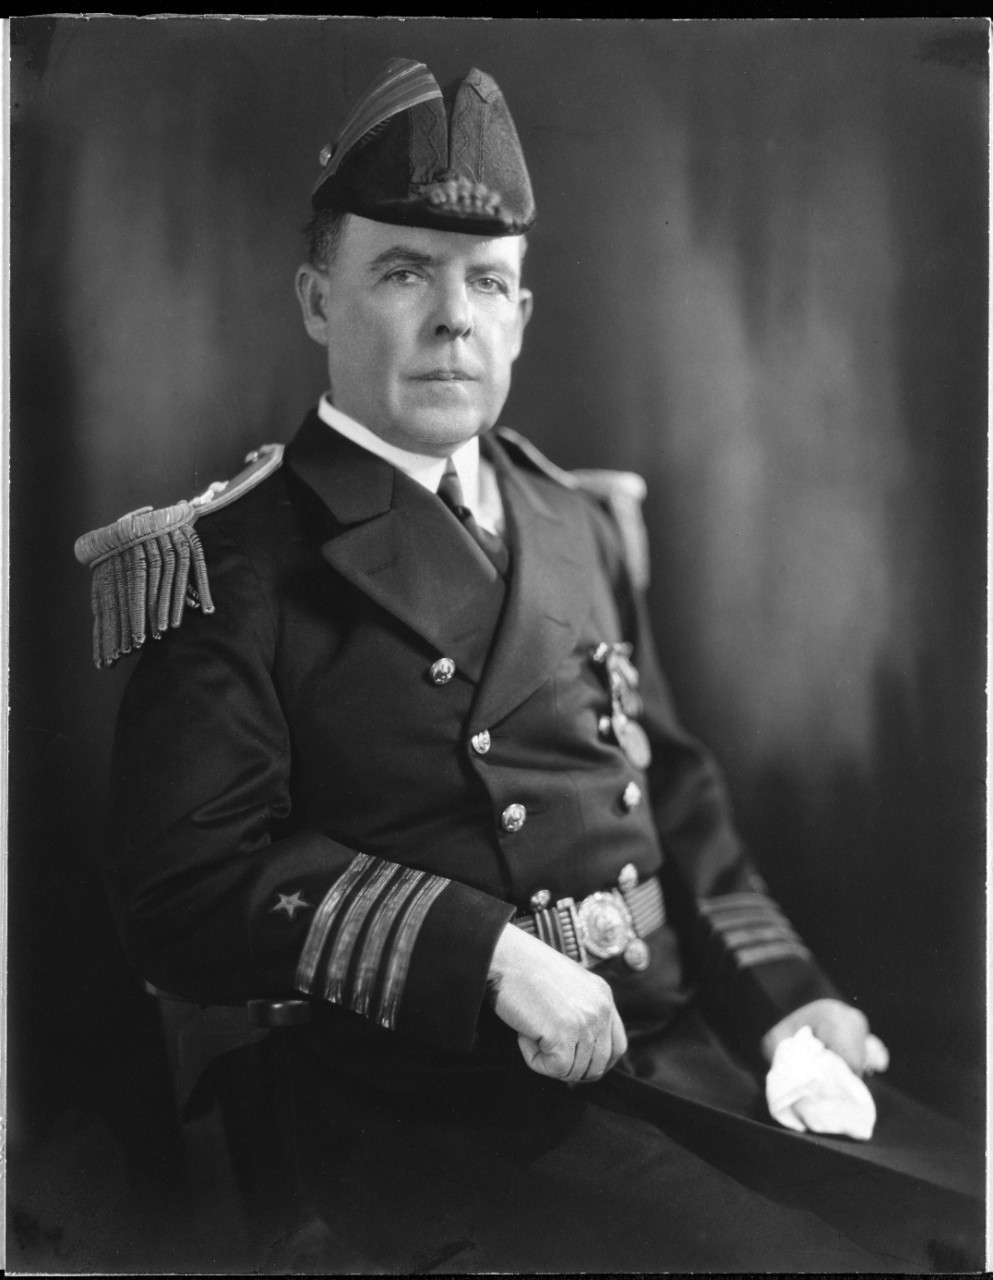 Captain John McC. Luby, USN